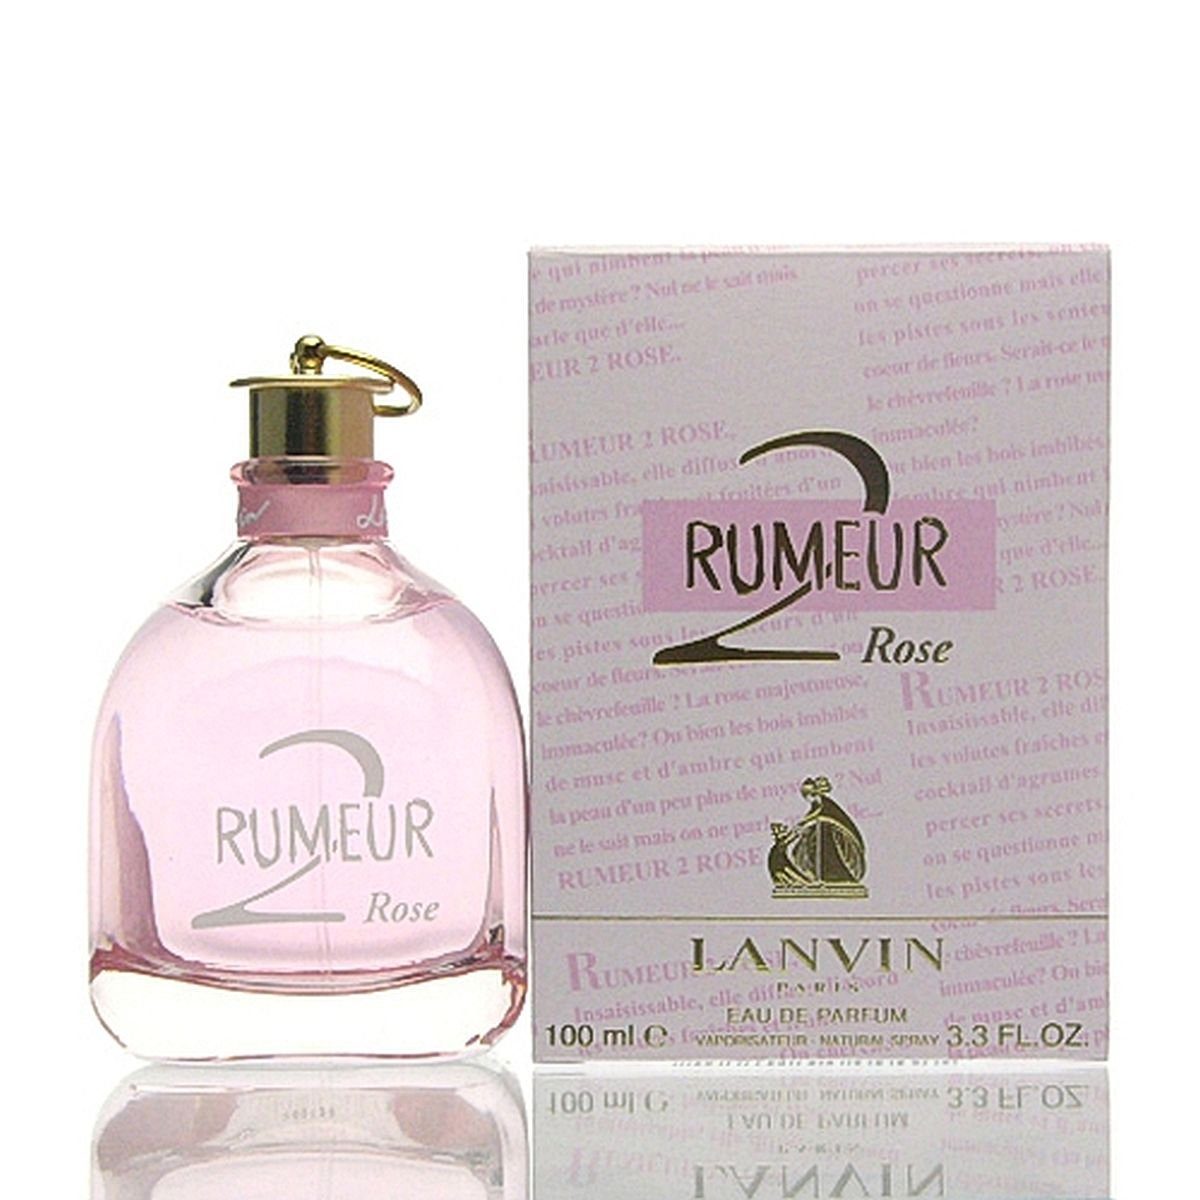 LANVIN Eau de Parfum ml Eau Rose Parfum Rumeur de 100 Lanvin 2